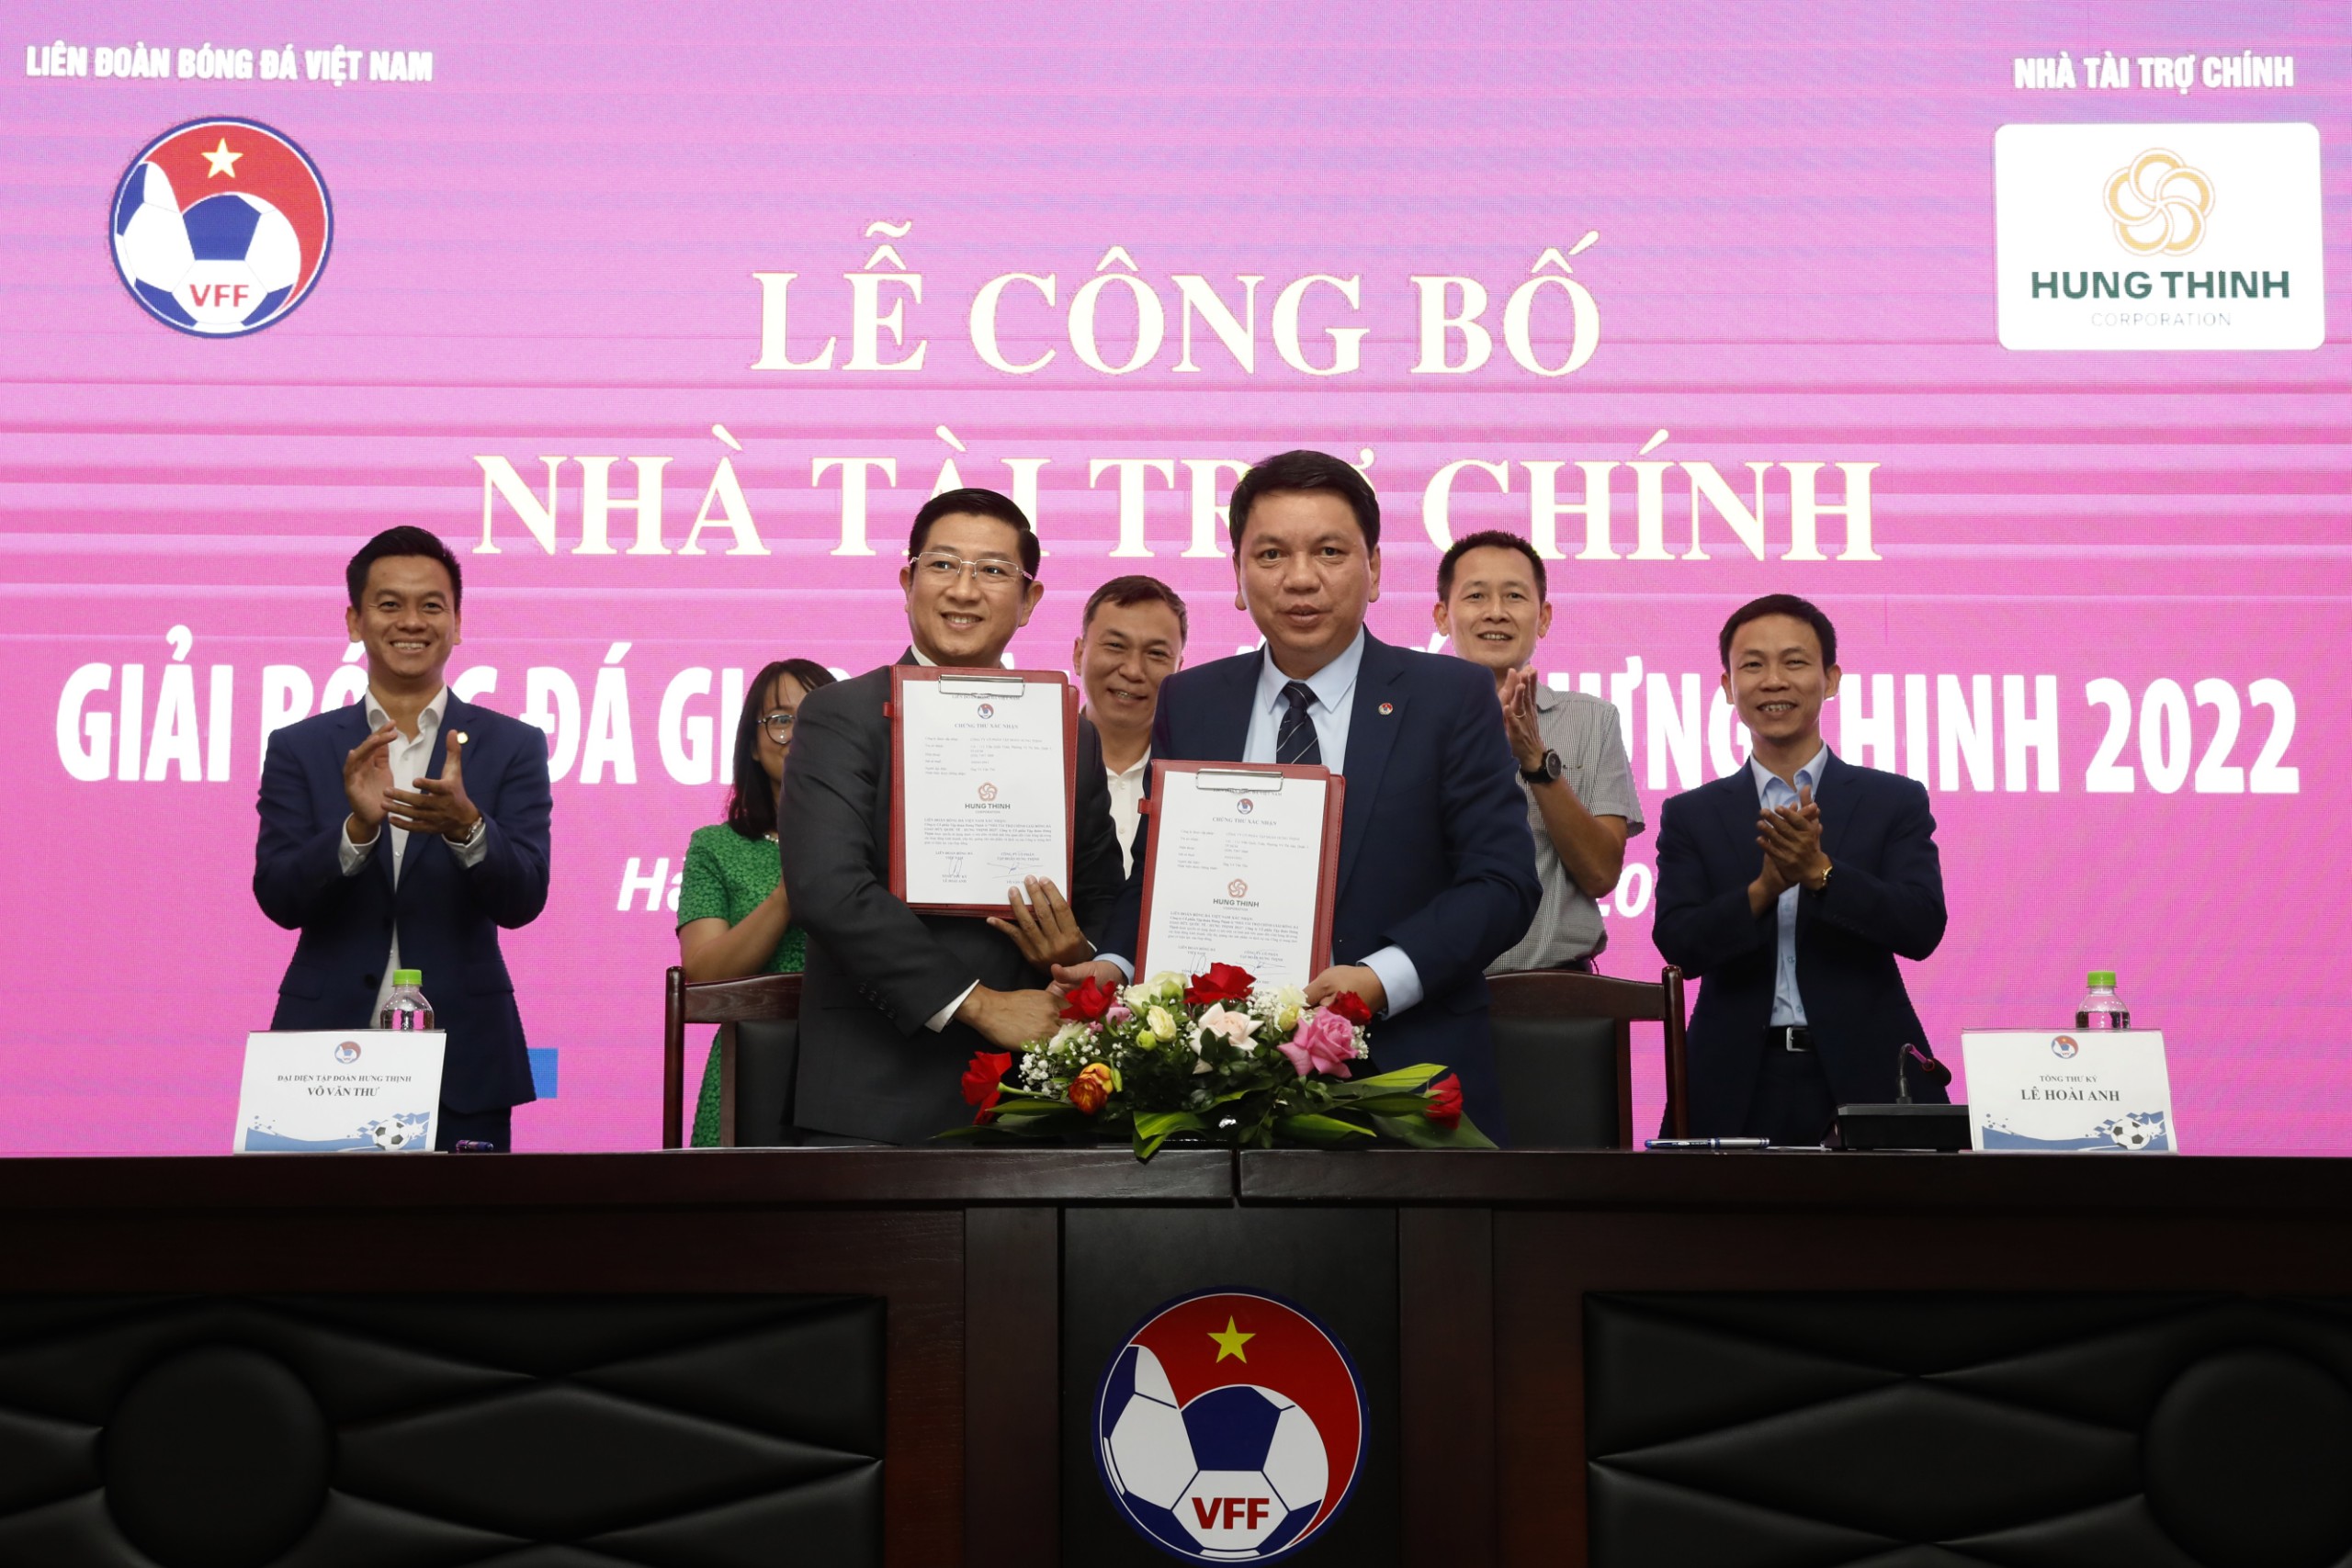  Tập đoàn Hưng Thịnh là nhà tài trợ chính giải bóng đá giao hữu quốc tế - Hưng Thịnh 2022